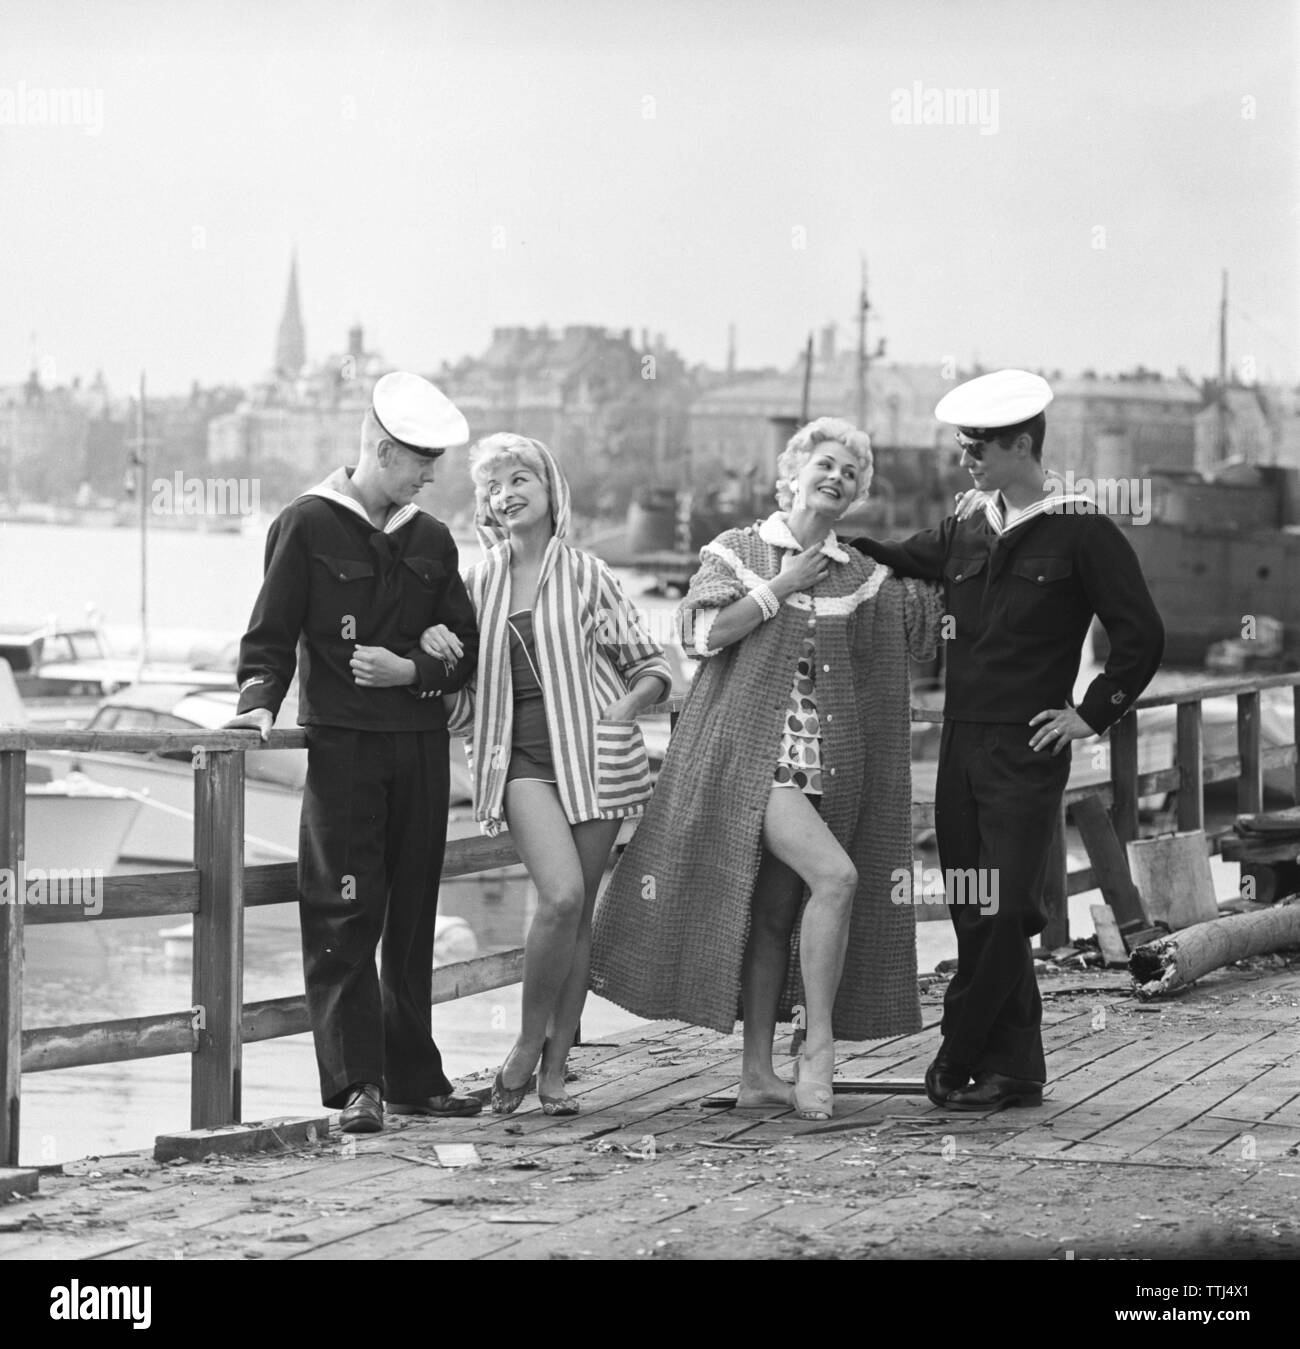 50er Jahre Mode. Zwei junge Frauen mit Stil Sommer Mode der Saison. Zwei  Matrosen in Uniform trägt zu dem Thema. Schweden 1958 Stockfotografie -  Alamy